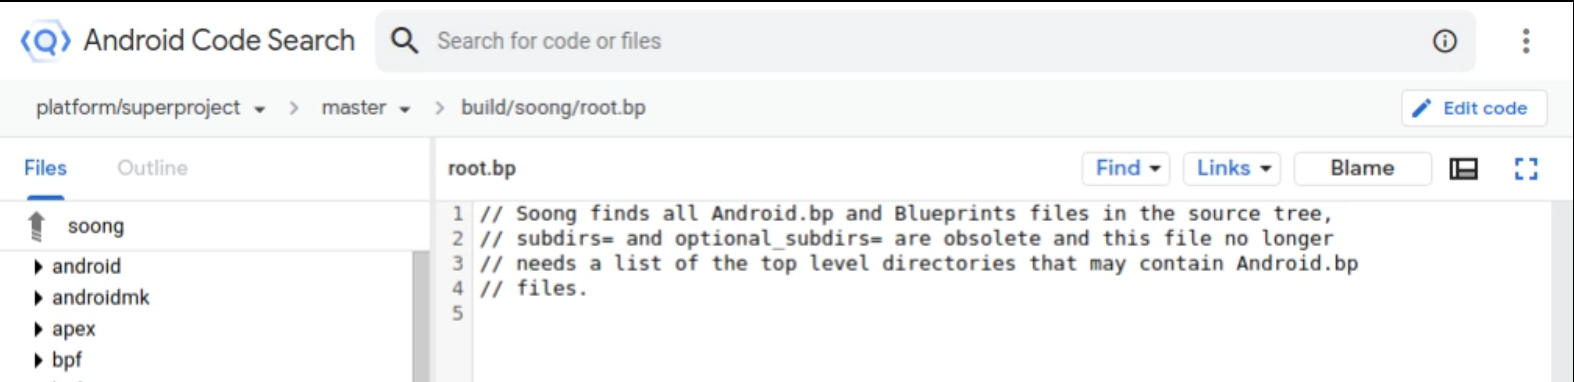 Botão Editar código de pesquisa de código do Android